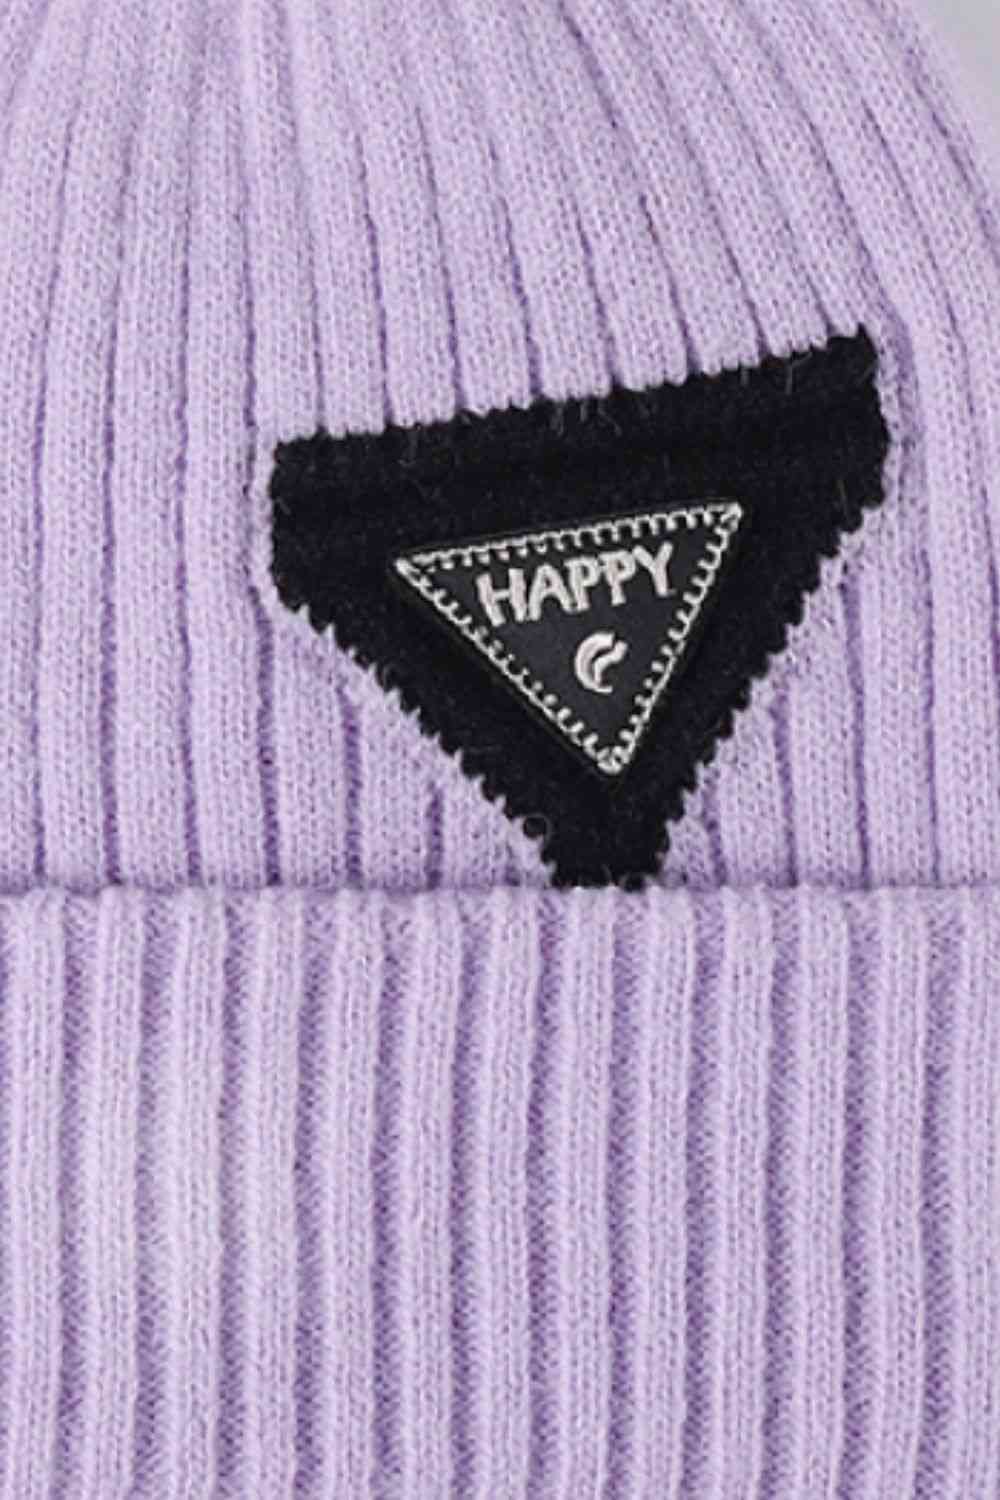 CHIC HATZ HAPPY Hat Contrast Beanie